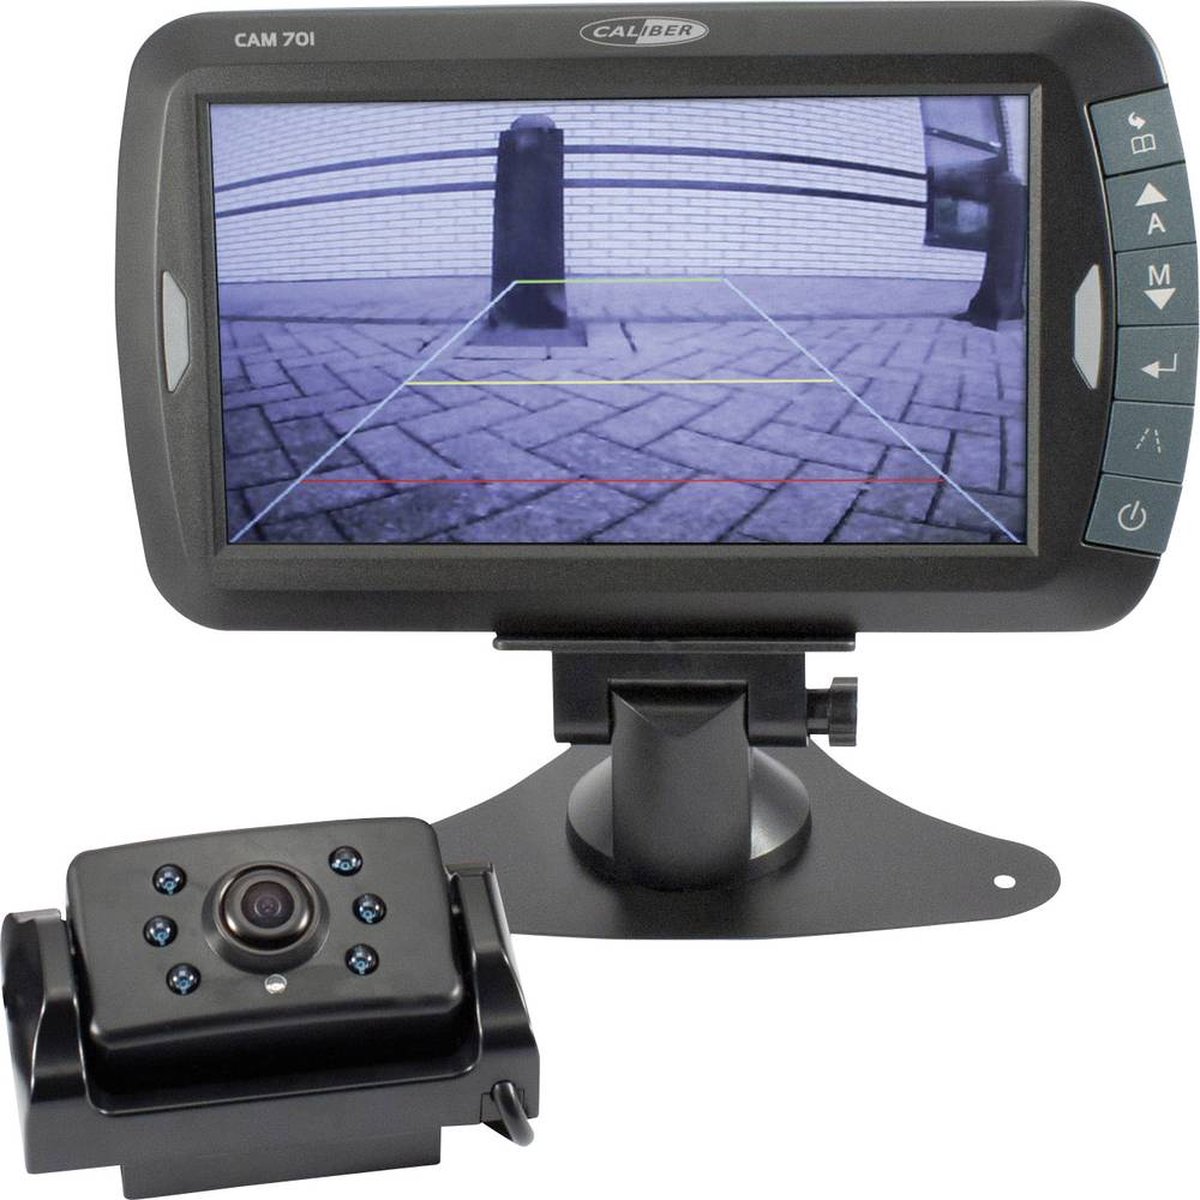 Caméra de Recul Voiture Rétroviseur pour Camping Car avec écran LCD Couleur  7 - Camera de Recul